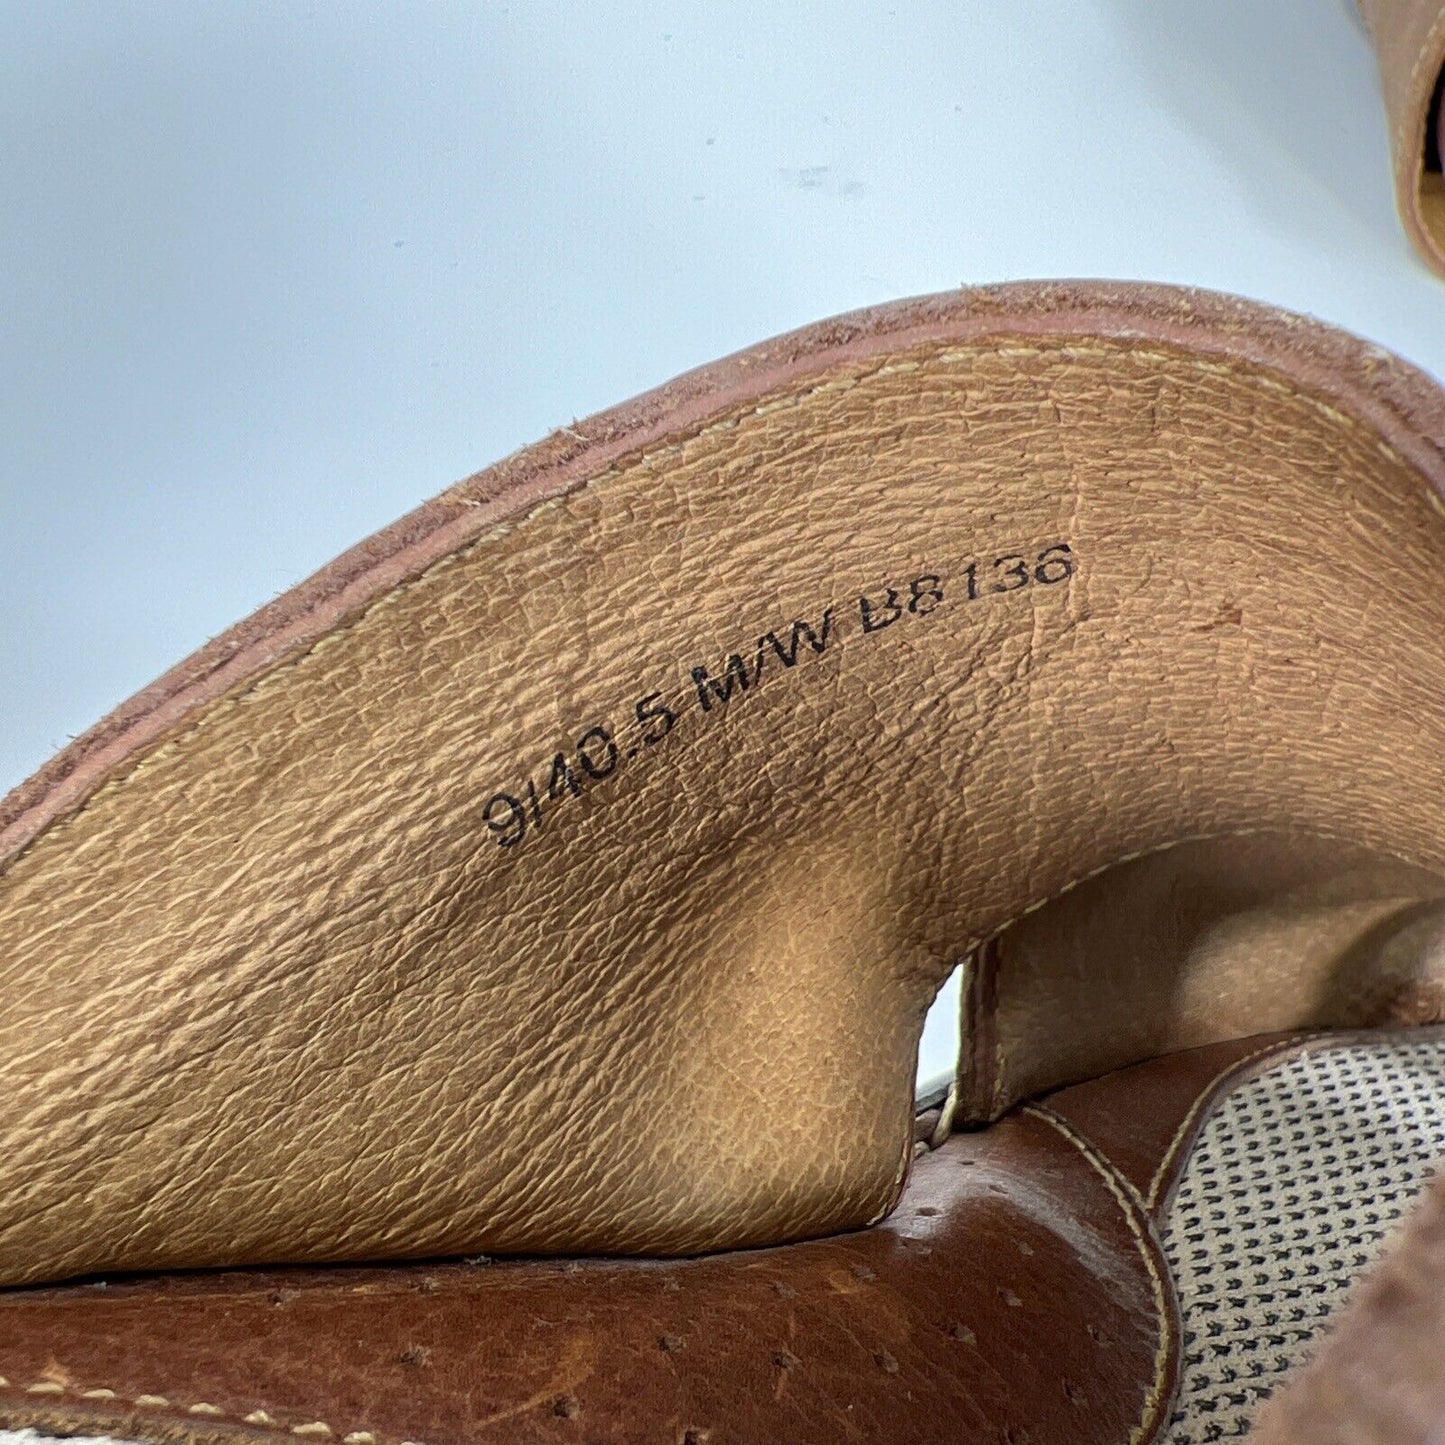 Sandalias de dedo del pie de cuero marrón Born para hombre - 9